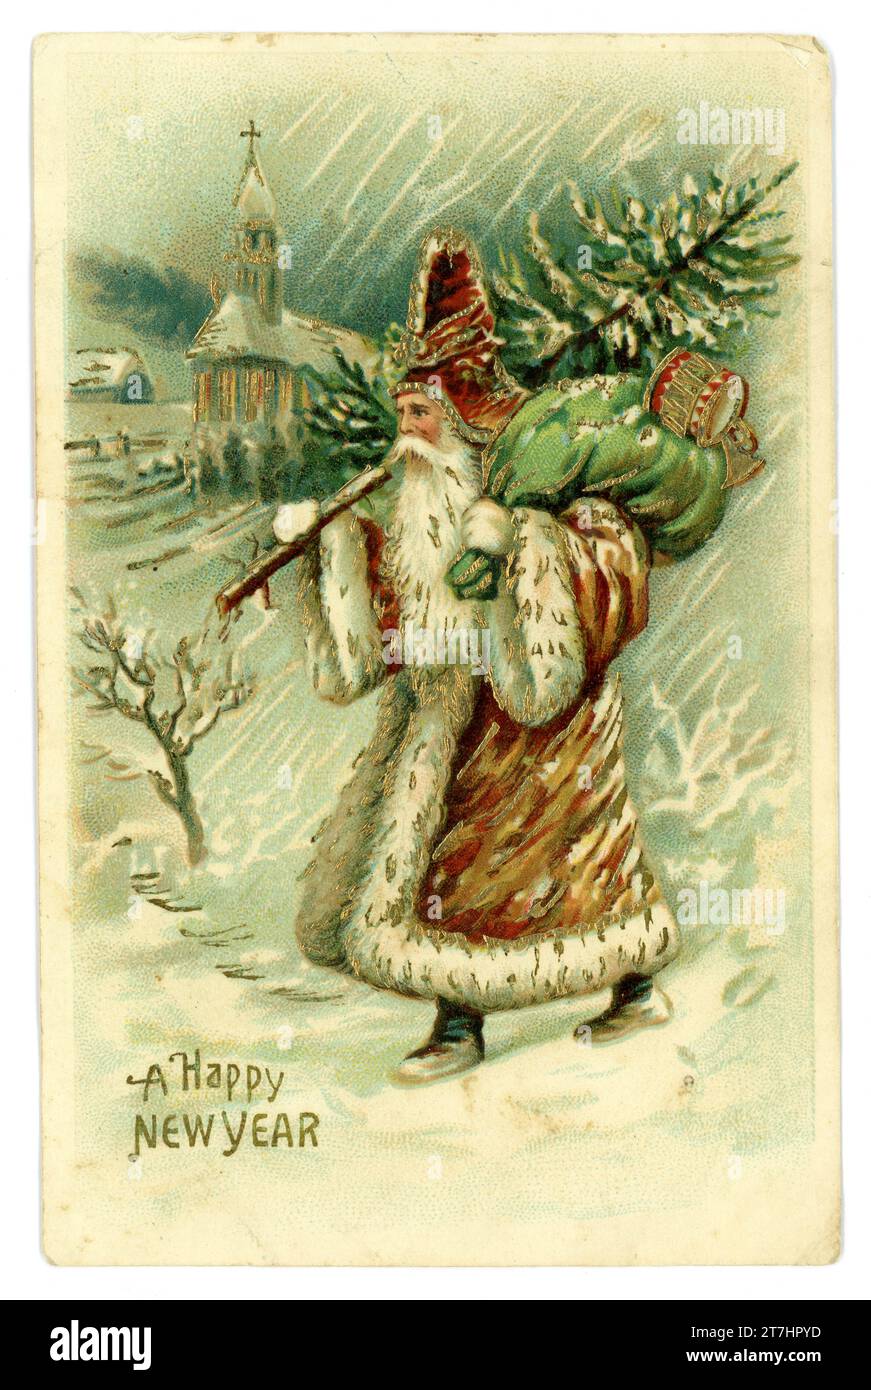 Cartolina originale del primo stile Babbo Natale che indossa un cappotto marrone, porta un sacco verde, porta giocattoli e un albero nella neve, felice anno nuovo è il benvenuto. Pub di The Novelty Postcard Co. Liverpool. Circa 1905 Foto Stock